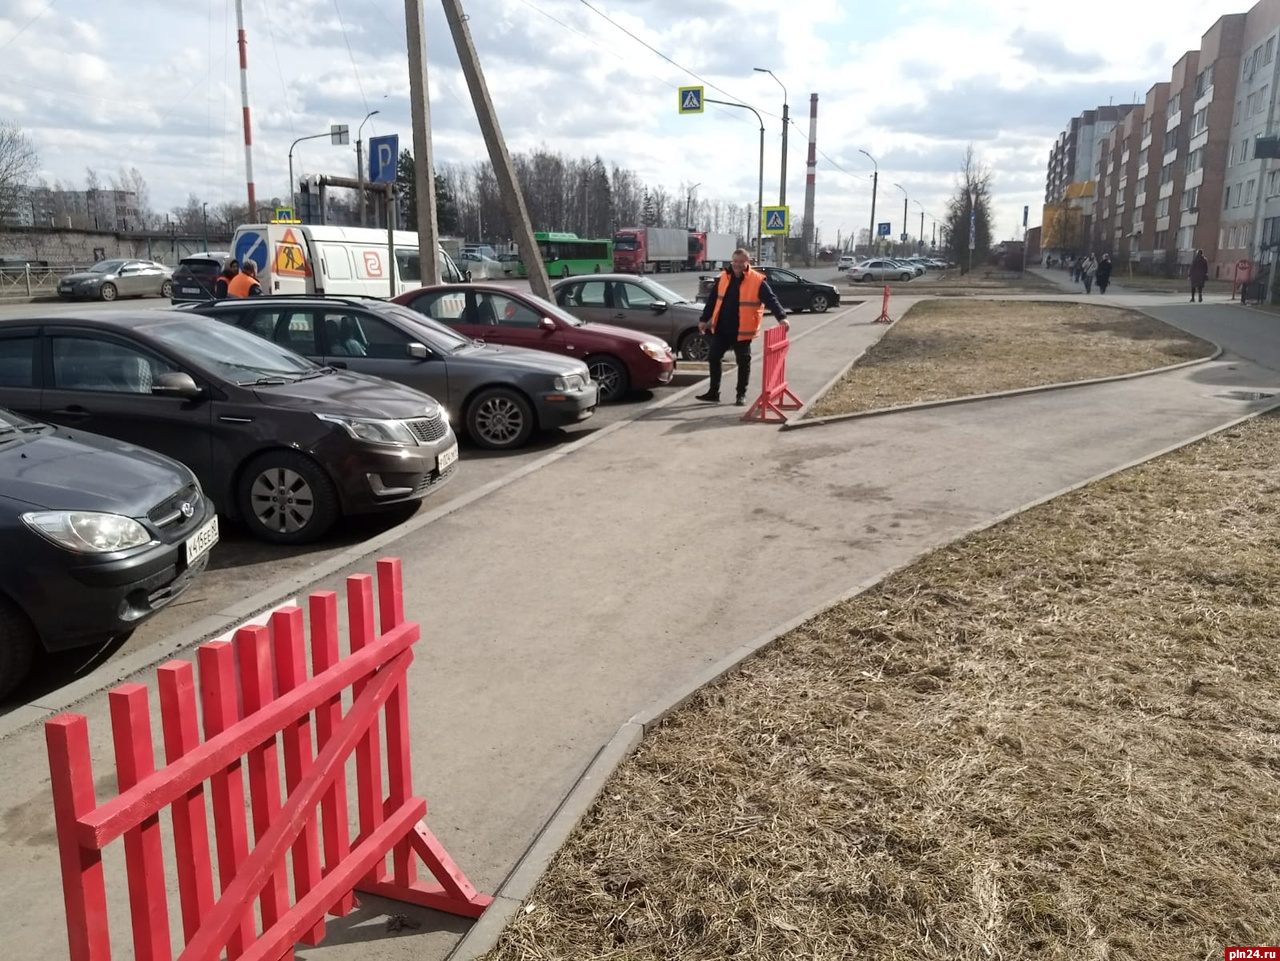 Уборку парковочных карманов проведут на участке улицы Рокоссовского в Пскове 28 марта